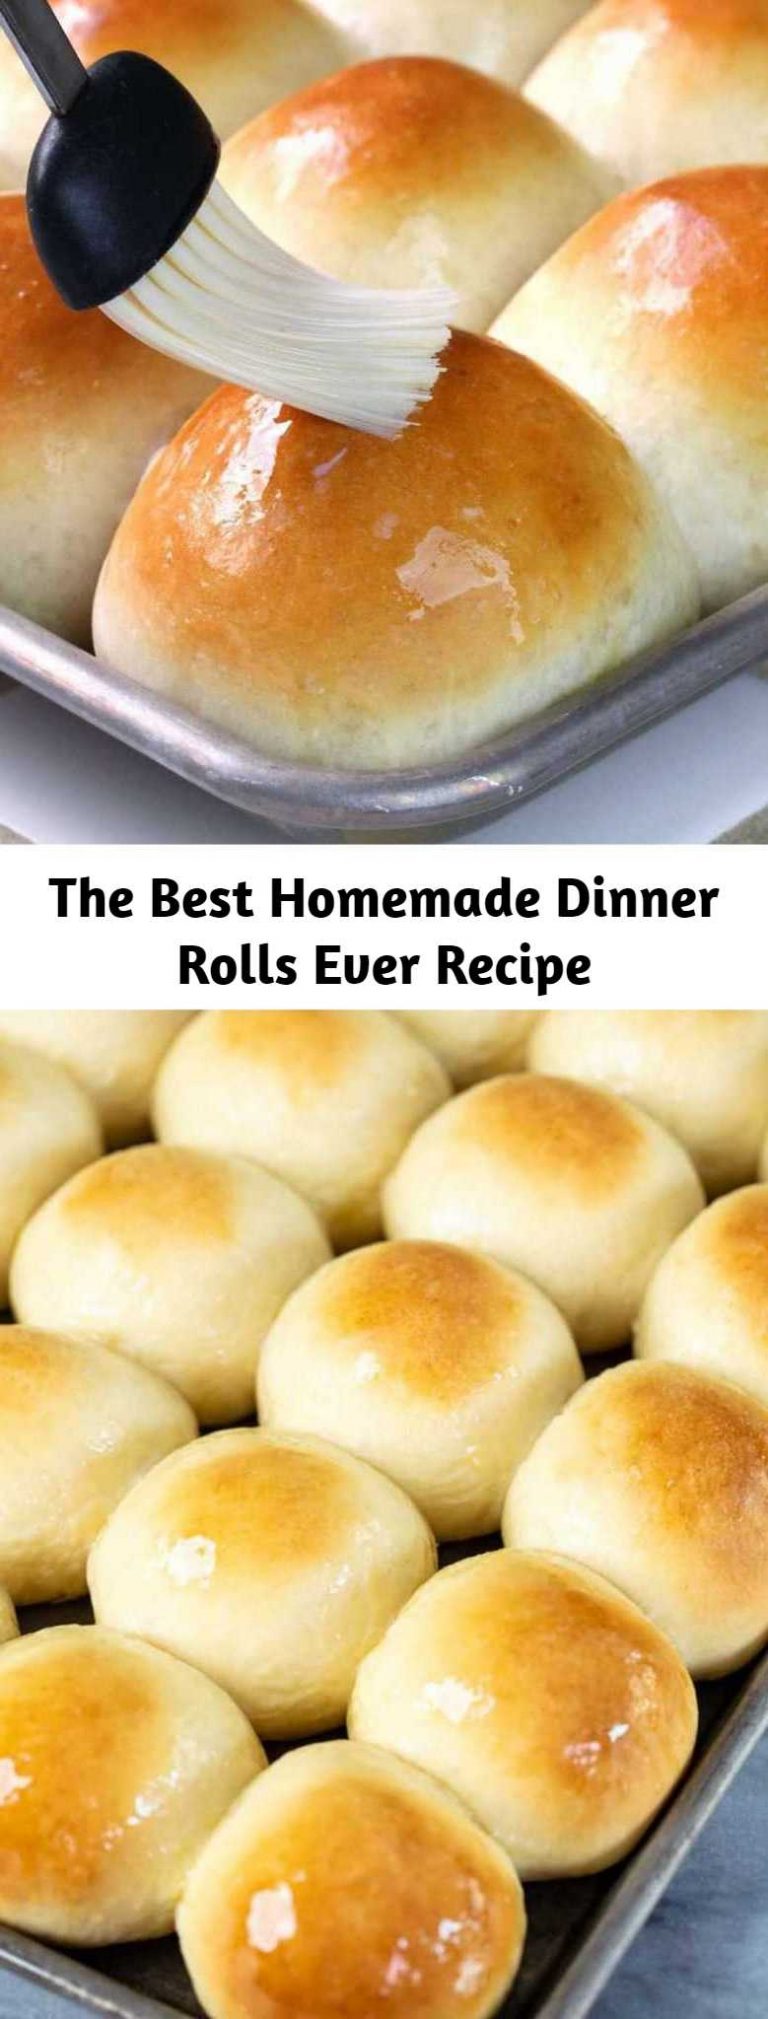 The Best Homemade Dinner Rolls Ever Recipe – Mom Secret Ingrediets